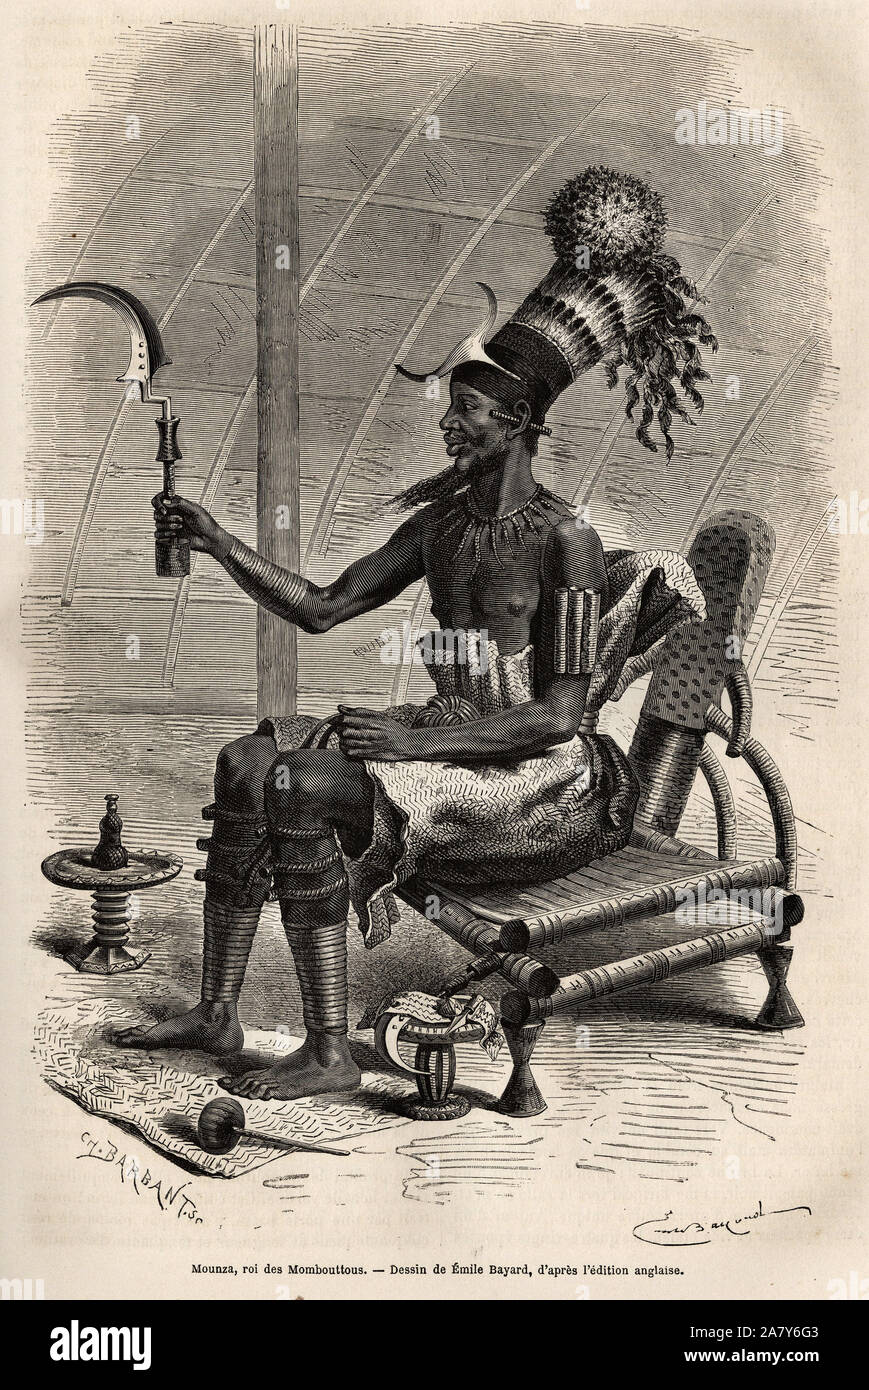 Mounza, roi des Mombouttous ( tribu du Soudan), coiffe d'un chignon recouvert d'un haut bonnet cylindrique orne de plumes de perroquet, une plaque de Stock Photo